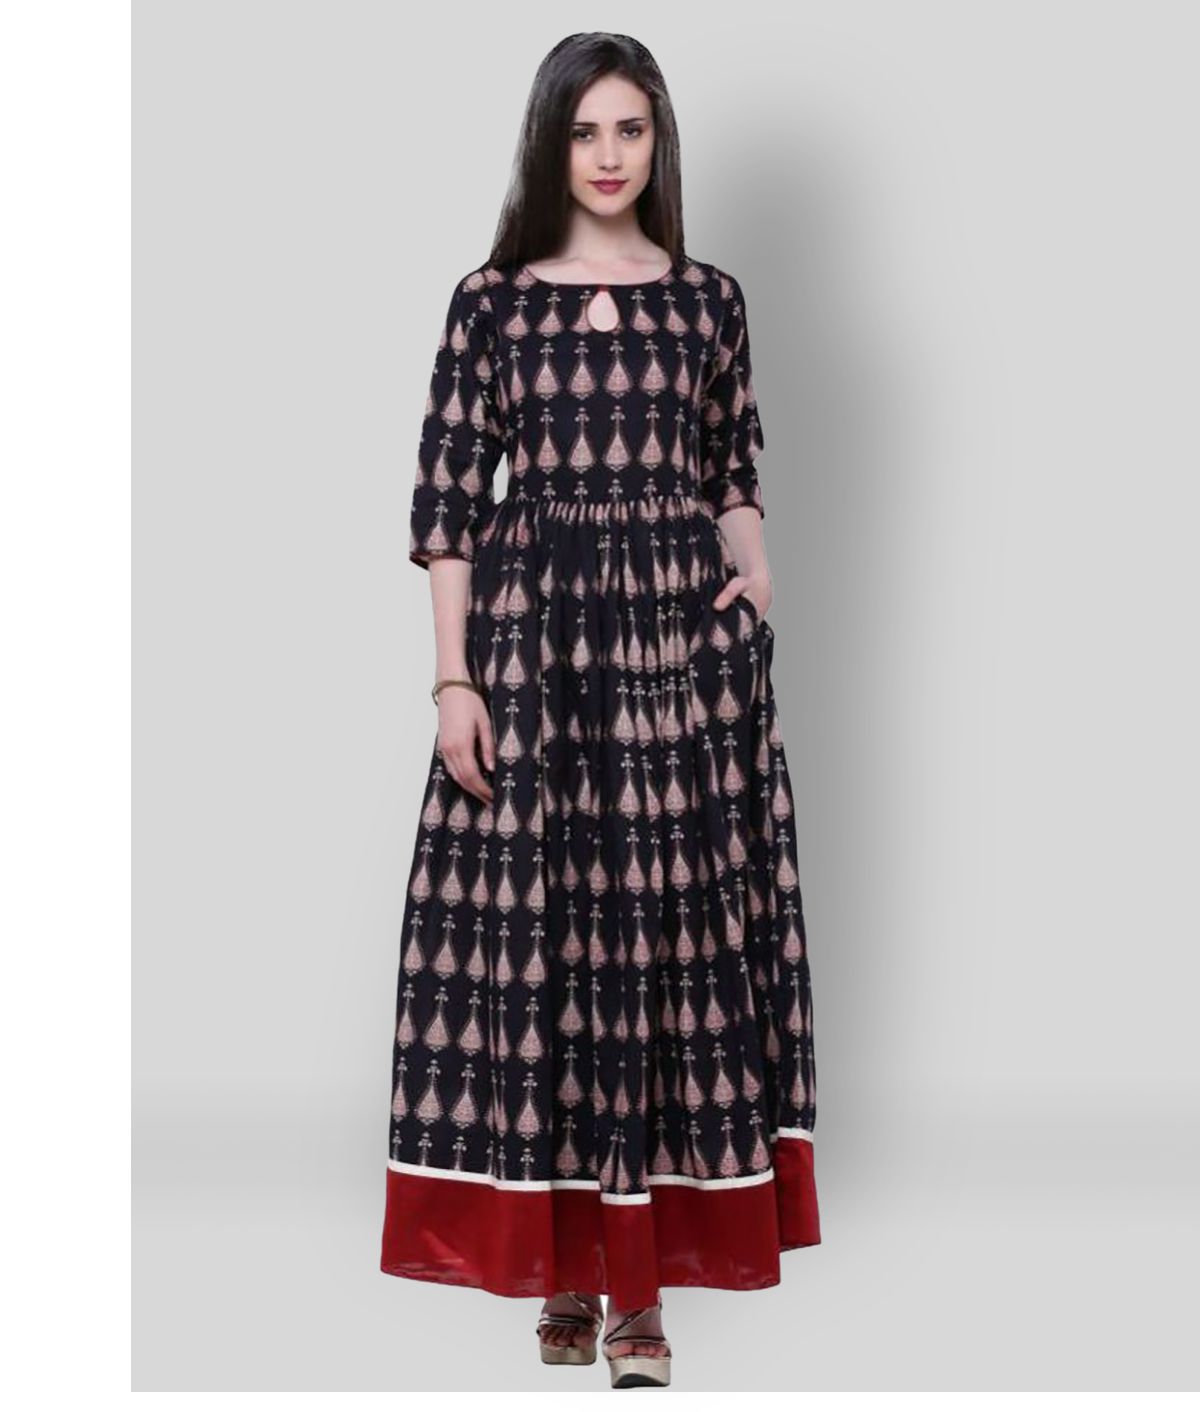     			Divena - Multicolor Cotton Women's A-line Dress ( Pack of 1 )